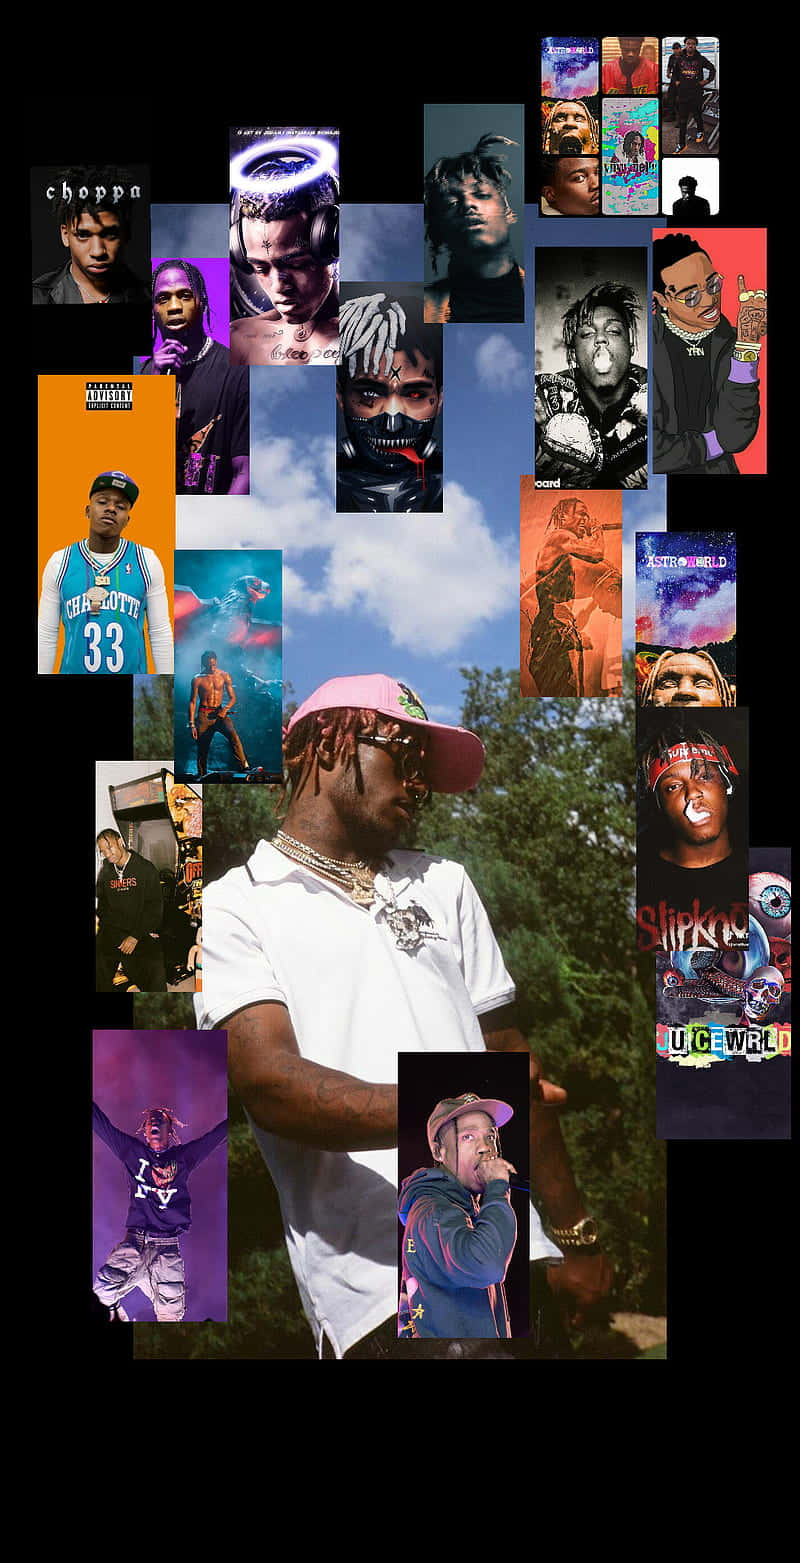 Feiernder Hip-hop-ikonen Wallpaper